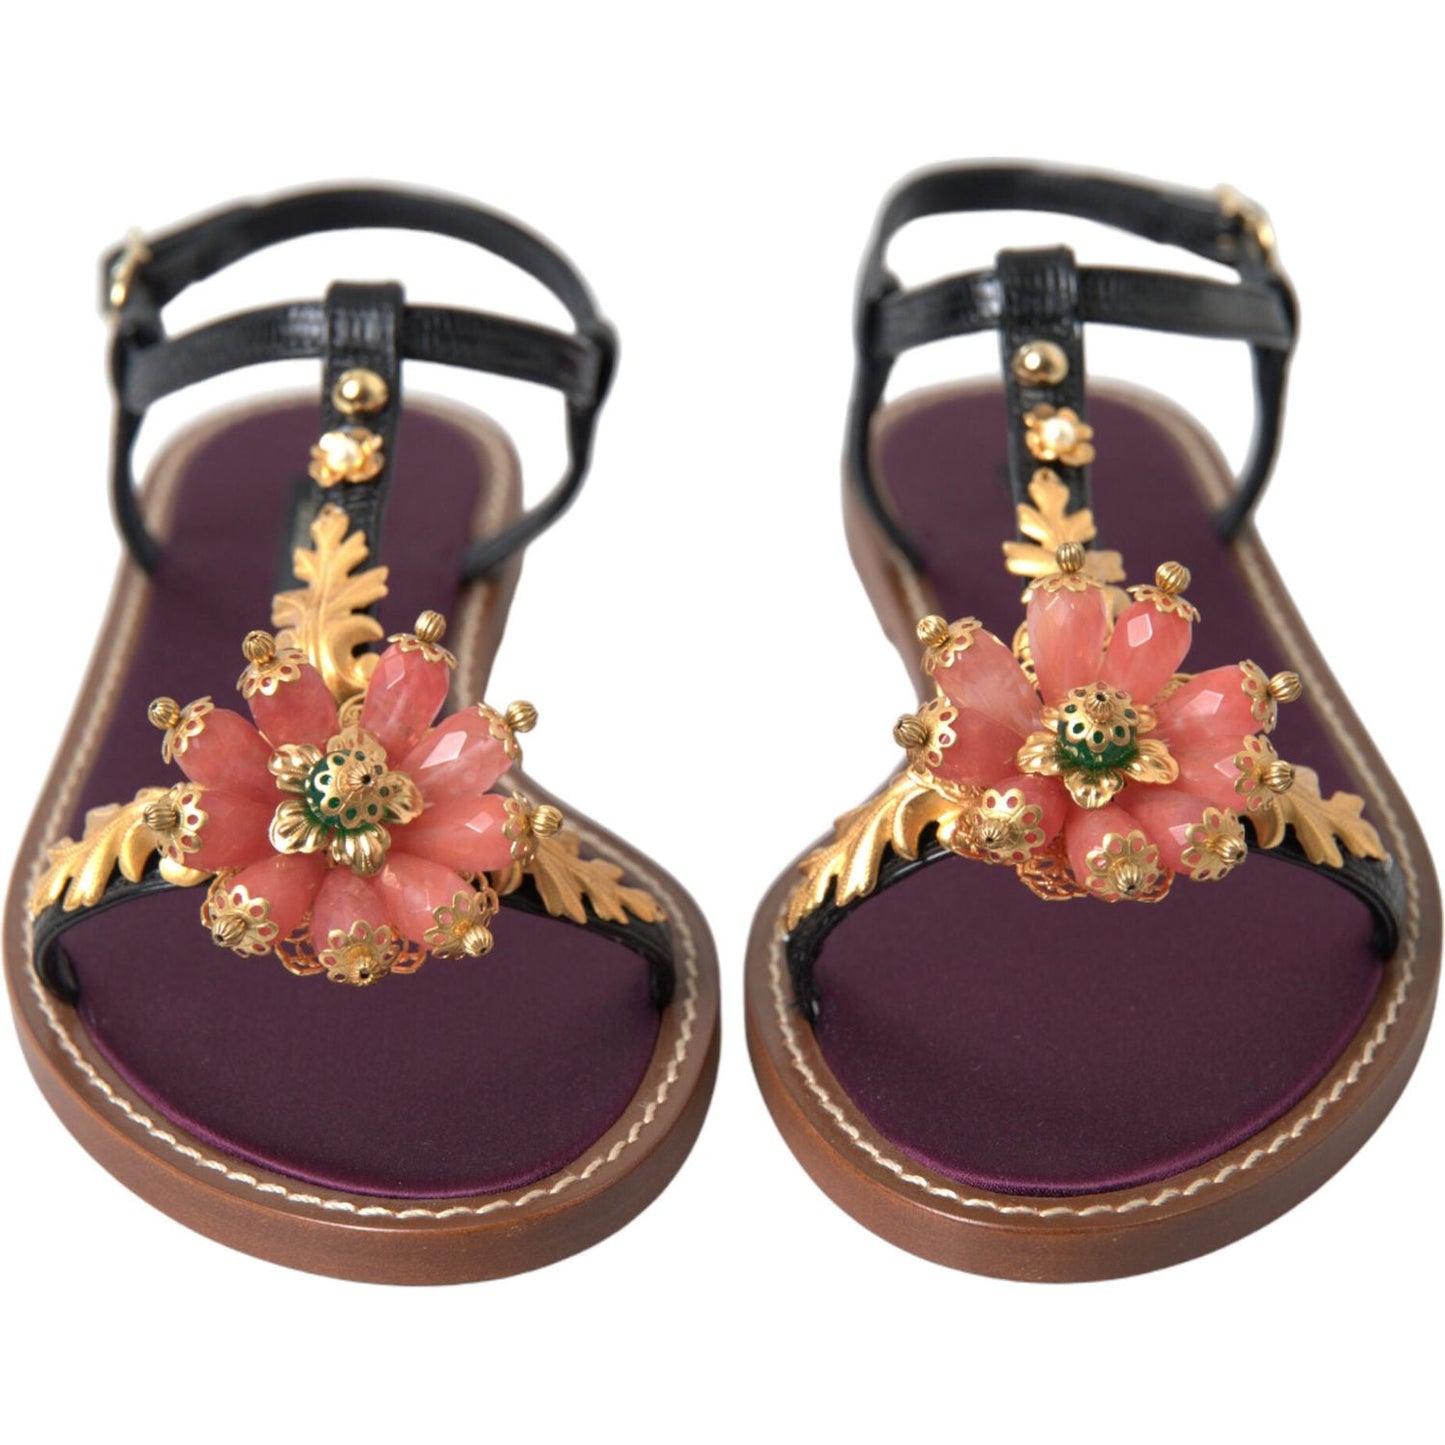 Dolce & Gabbana Elegant Crystal-Adorned Flat Sandals black-crystal-gold-sandals-leather-shoes